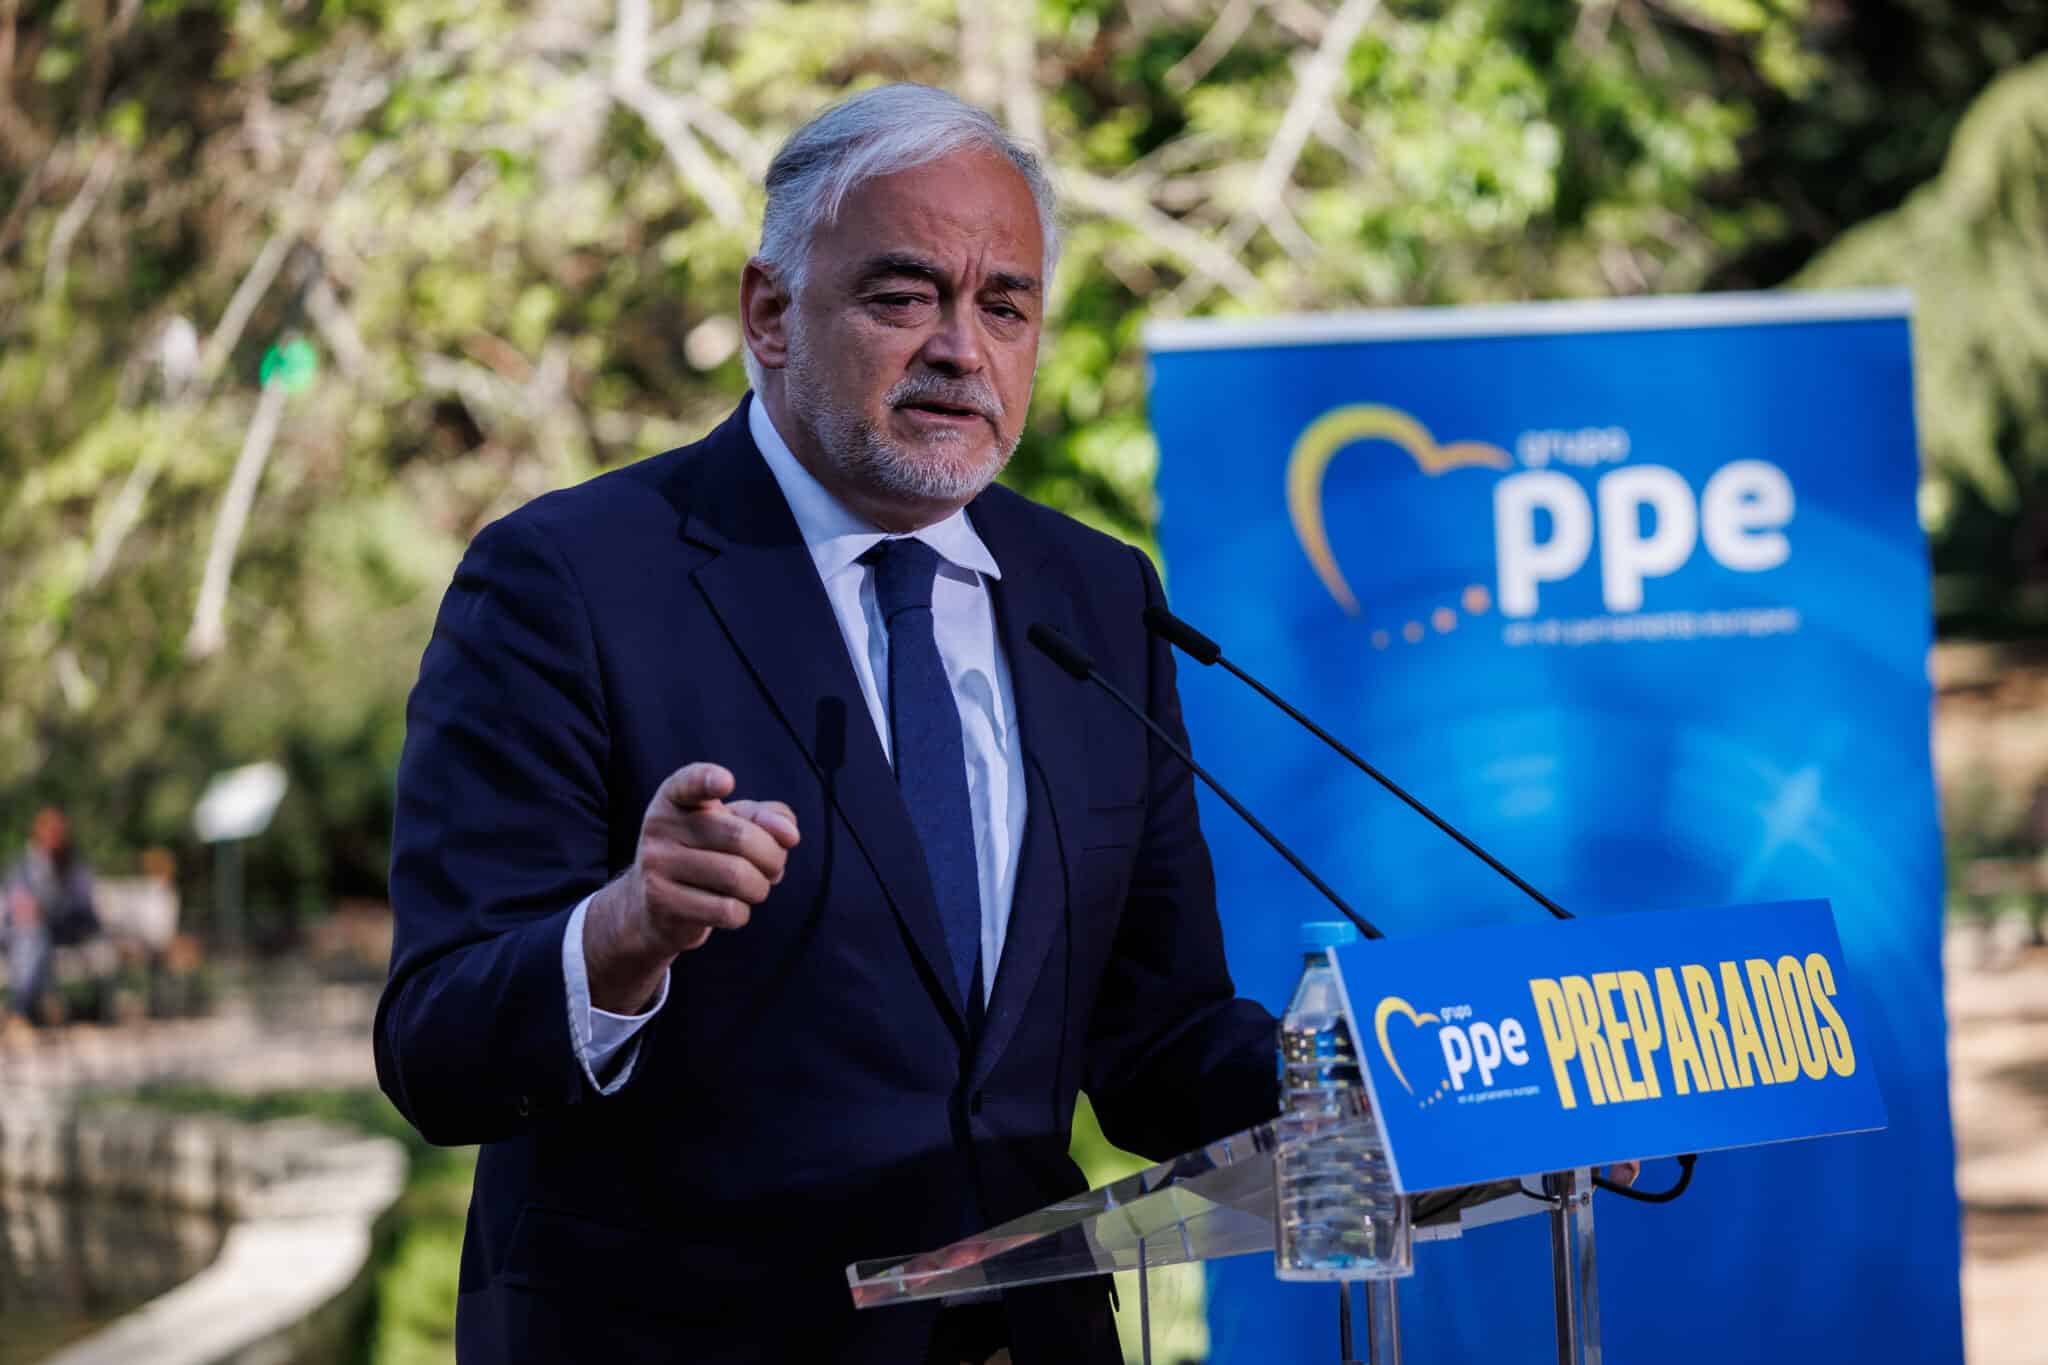 El presidente del Comité Organizador del XX Congreso Extraordinario Nacional del PP, Esteban González Pons, interviene en un acto organizado por el PP para conmemorar el Día de Europa, en mayo.